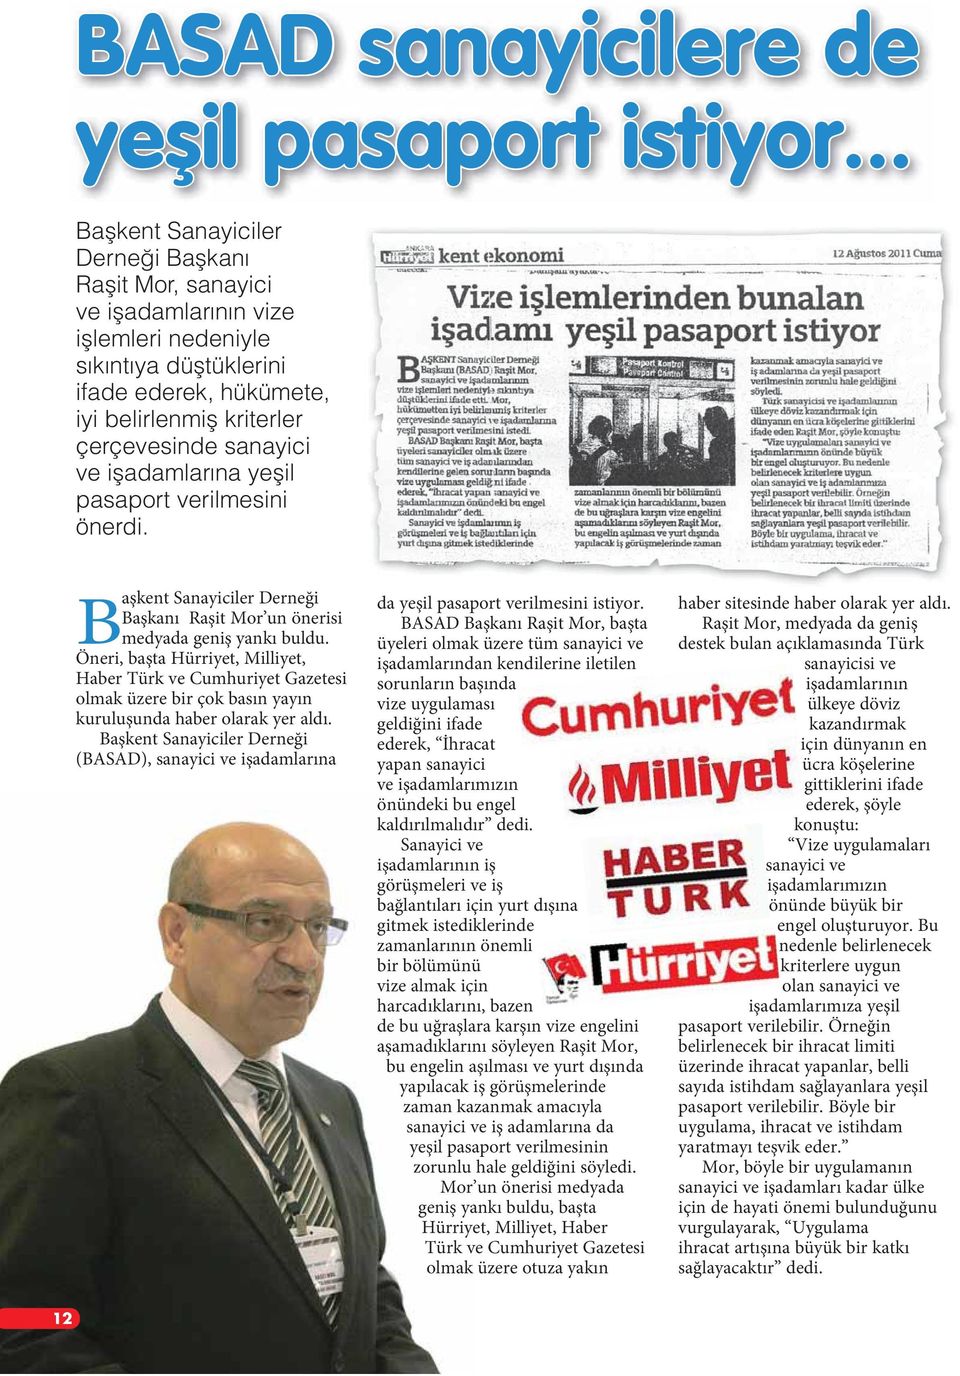 Öneri, başta Hürriyet, Milliyet, Haber Türk ve Cumhuriyet Gazetesi olmak üzere bir çok basın yayın kuruluşunda haber olarak yer aldı.